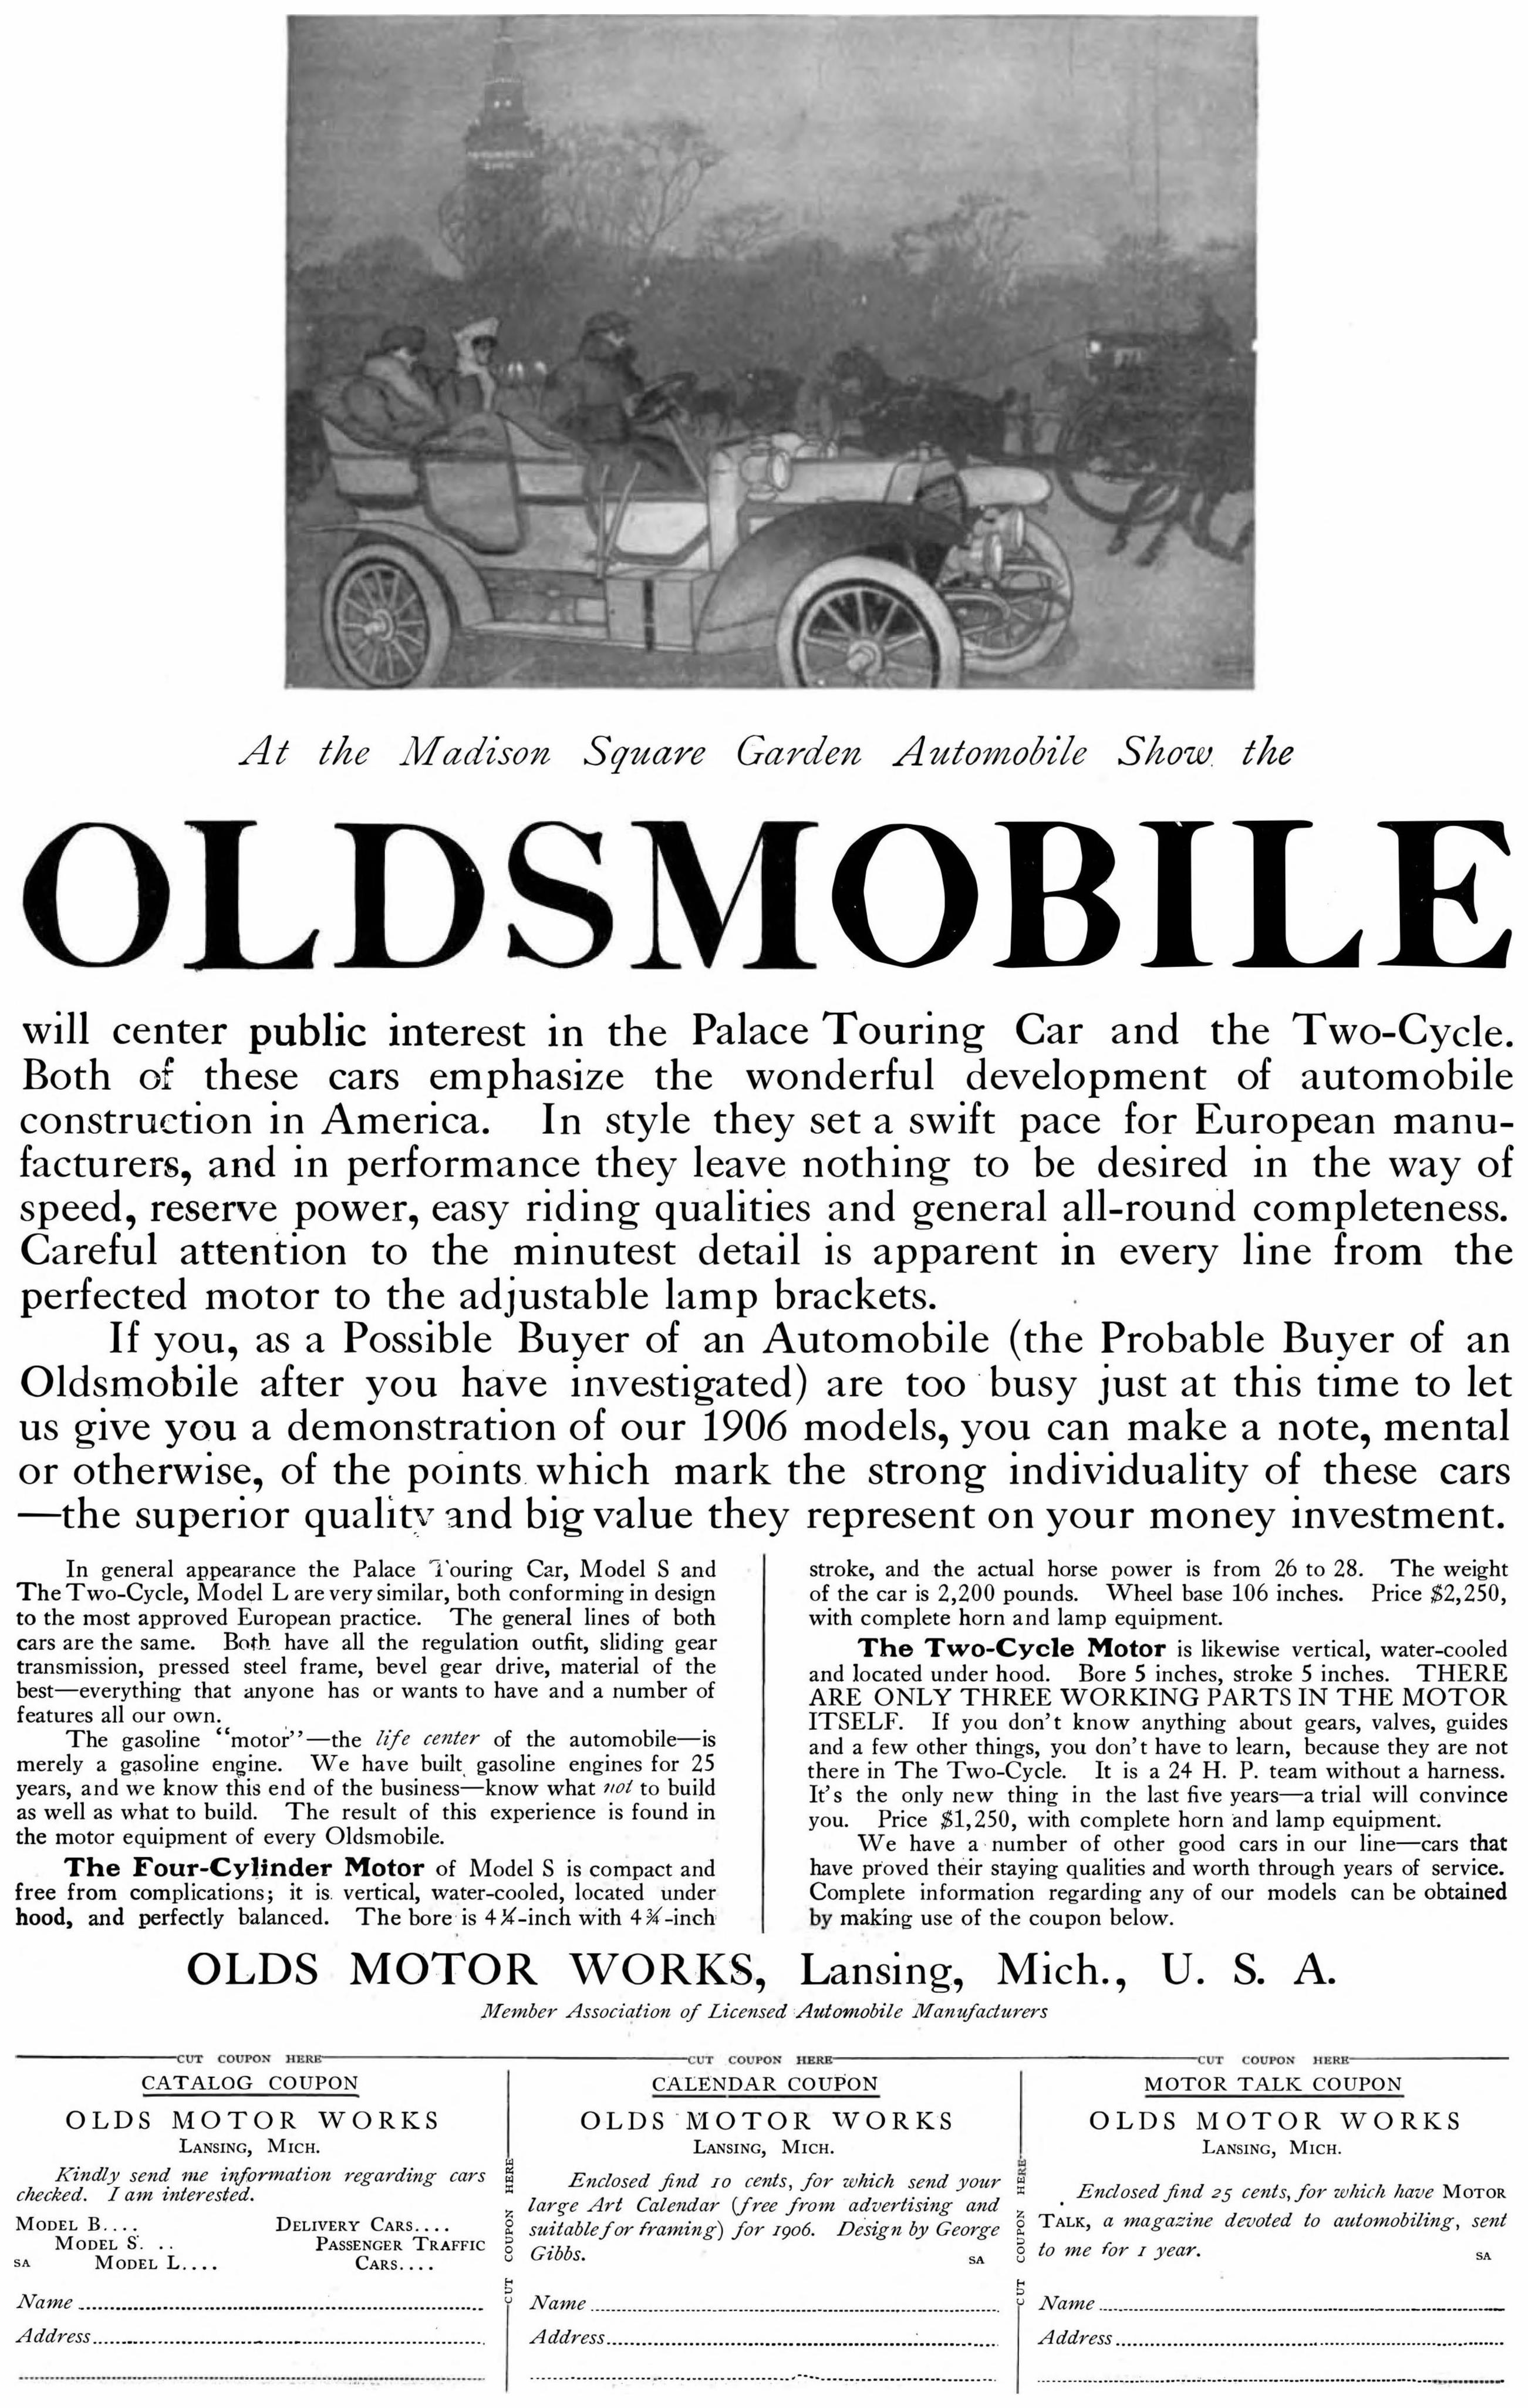 Okdsmobile 1906 0.jpg